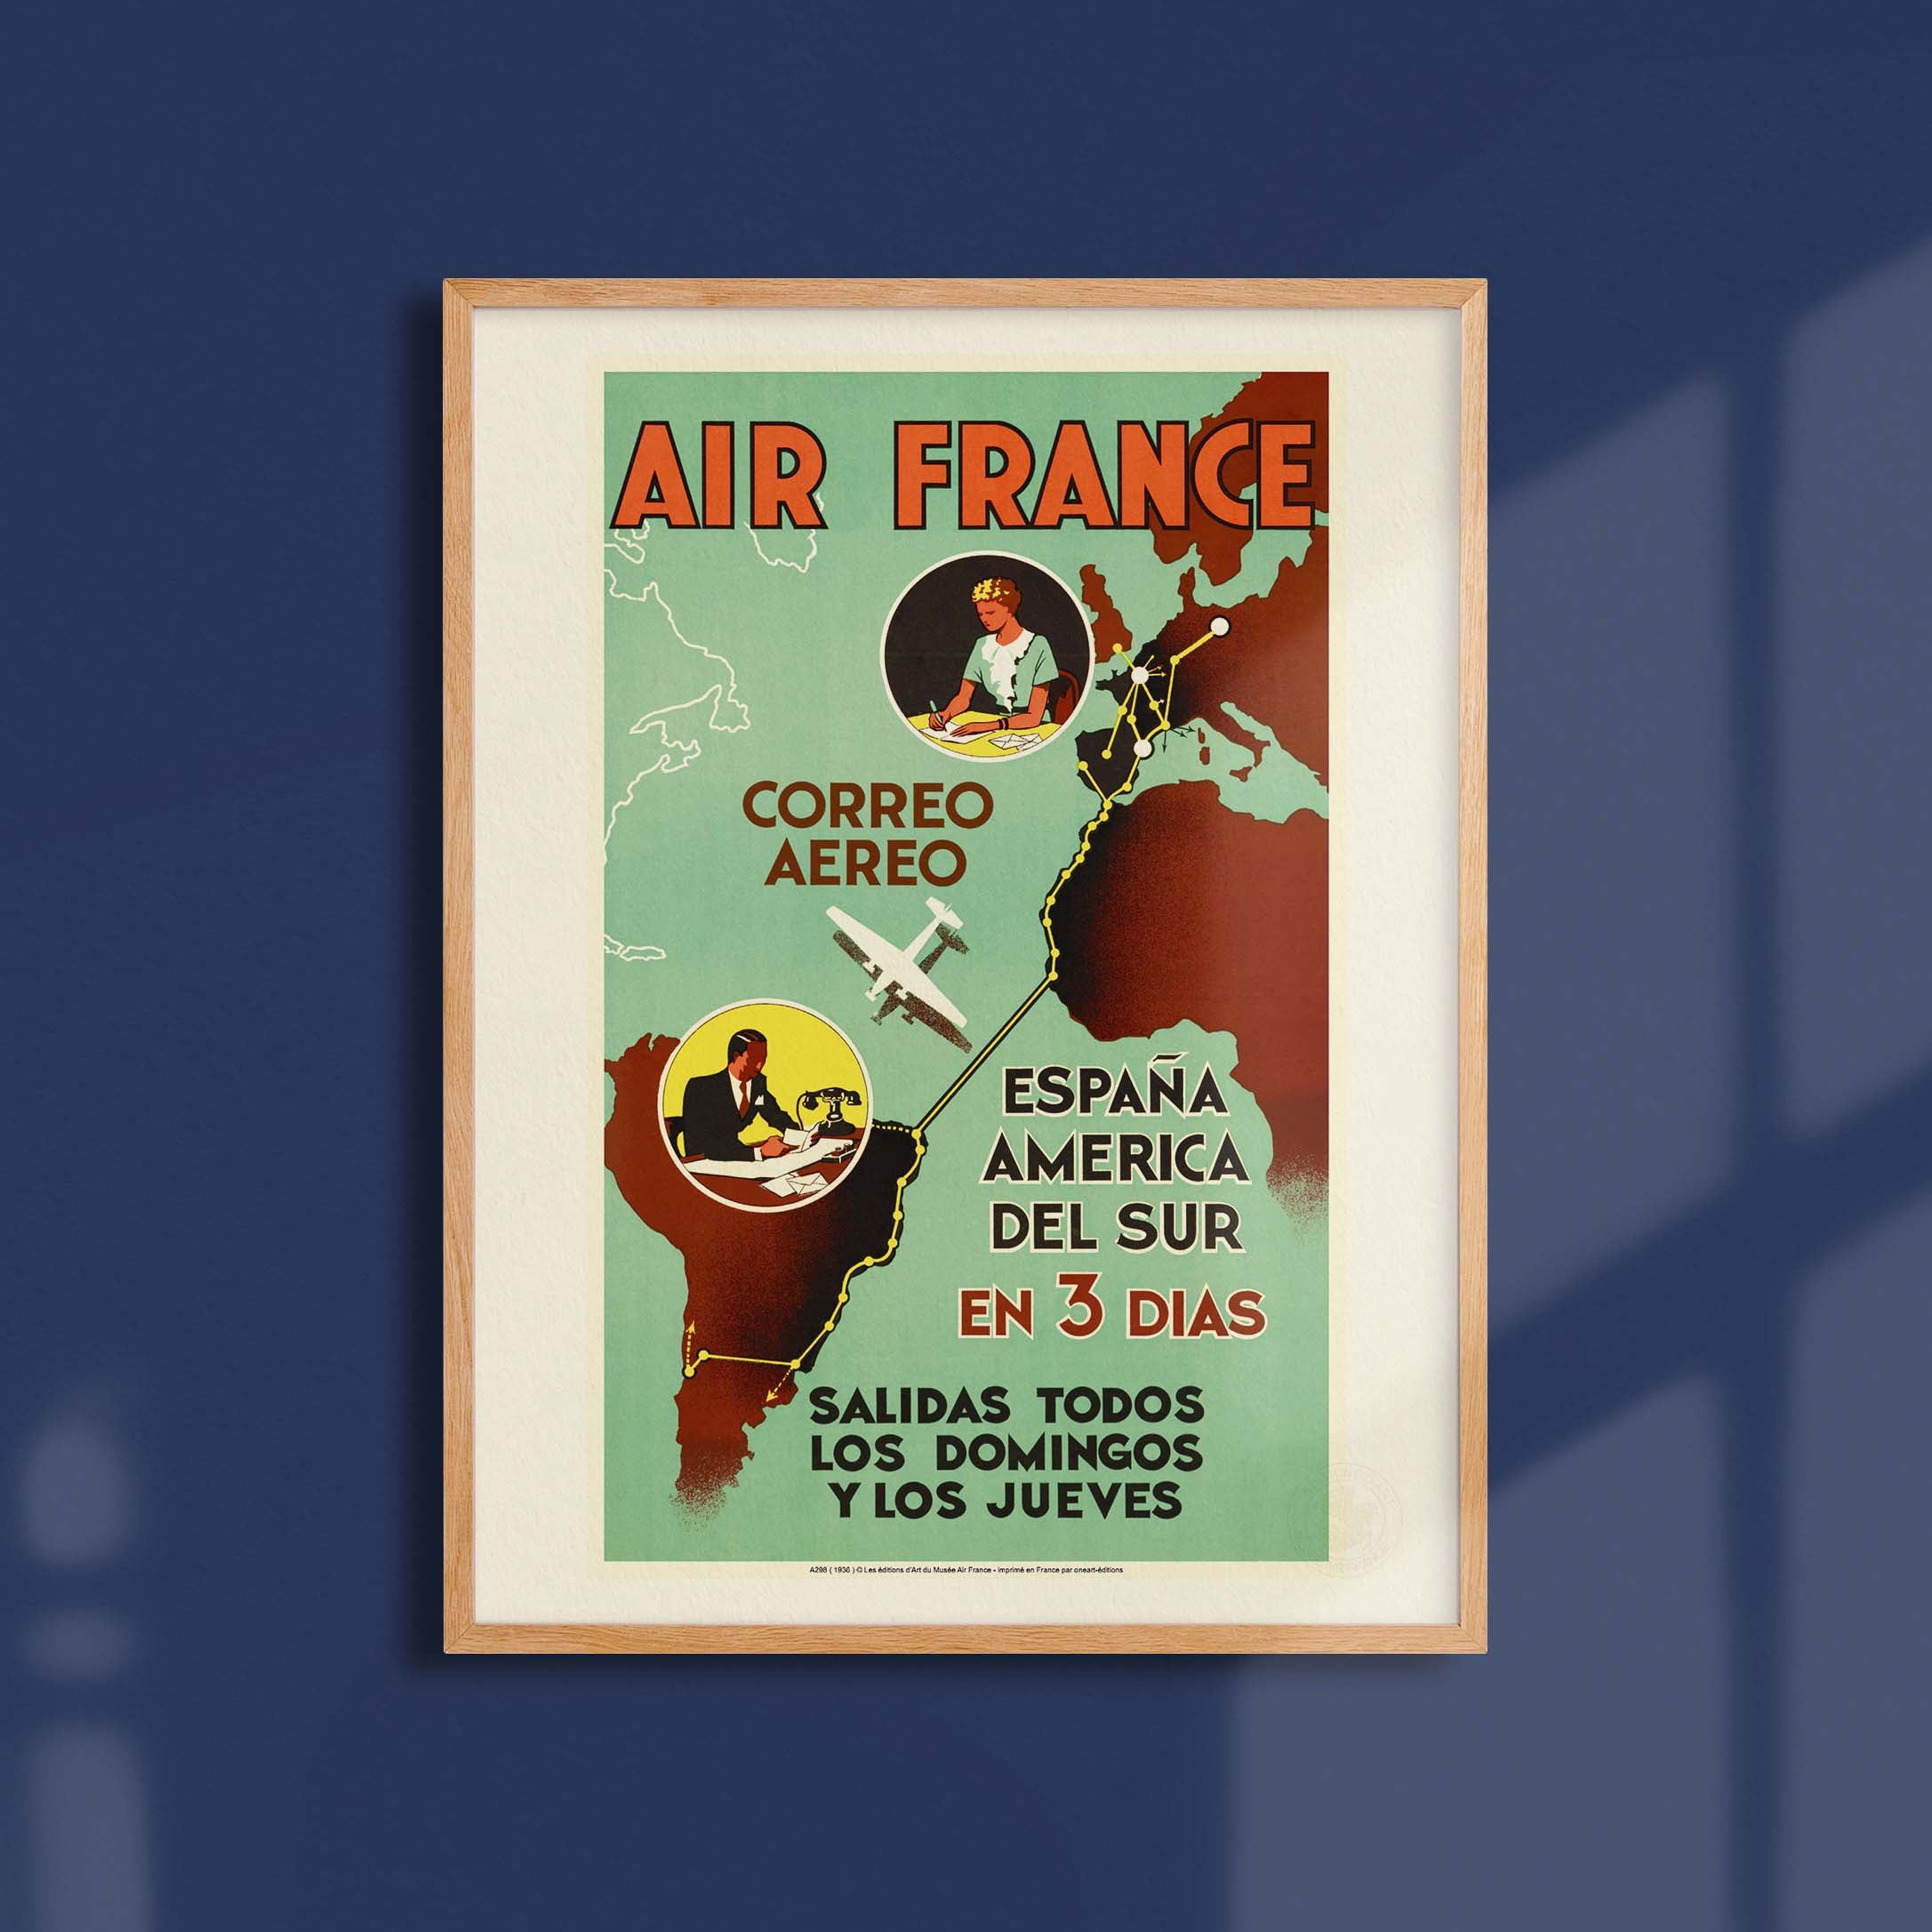 Affiche Air France - Air France / Espana America en 3 dias-oneart.fr